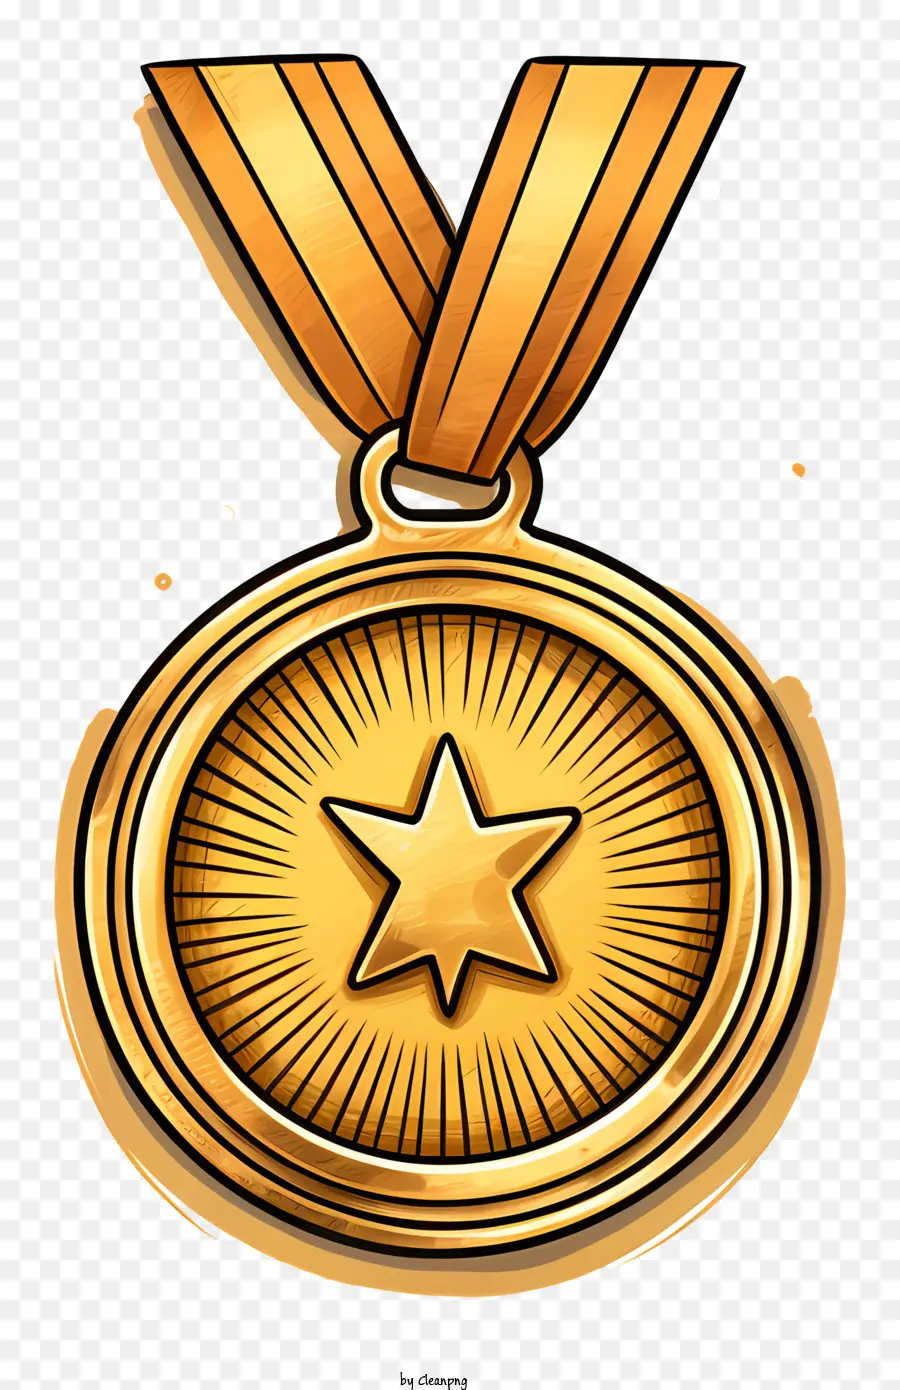 Silver Star - Glänzende Goldmedaille mit Silbersterndesign